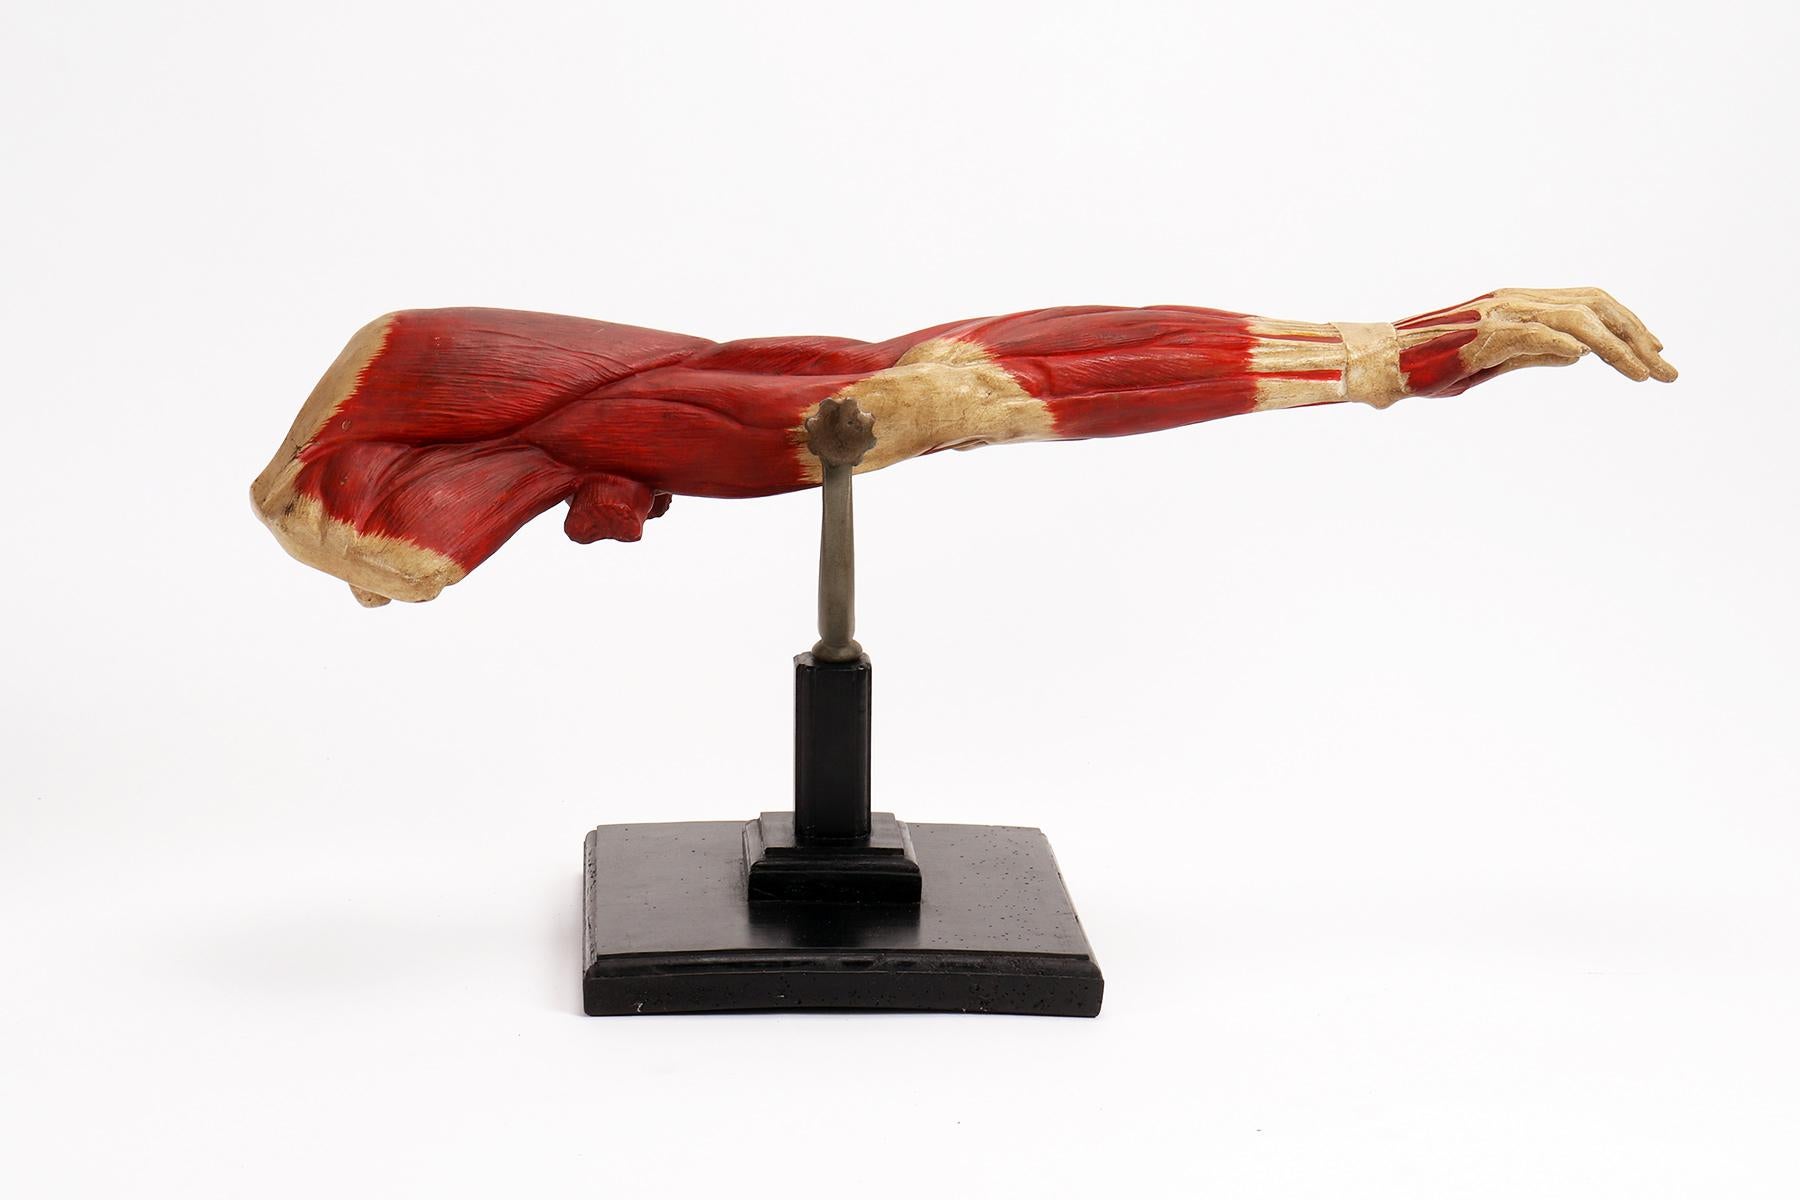 Anatomisches Modell für Schulen, didaktischer Gebrauch, das die obere Extremität darstellt, die sich auf eine Gabel stützt, die von einem schwarz lackierten Holzsockel getragen wird.
Hergestellt aus Gips und vollständig in Farbe ausgeführt. Aus